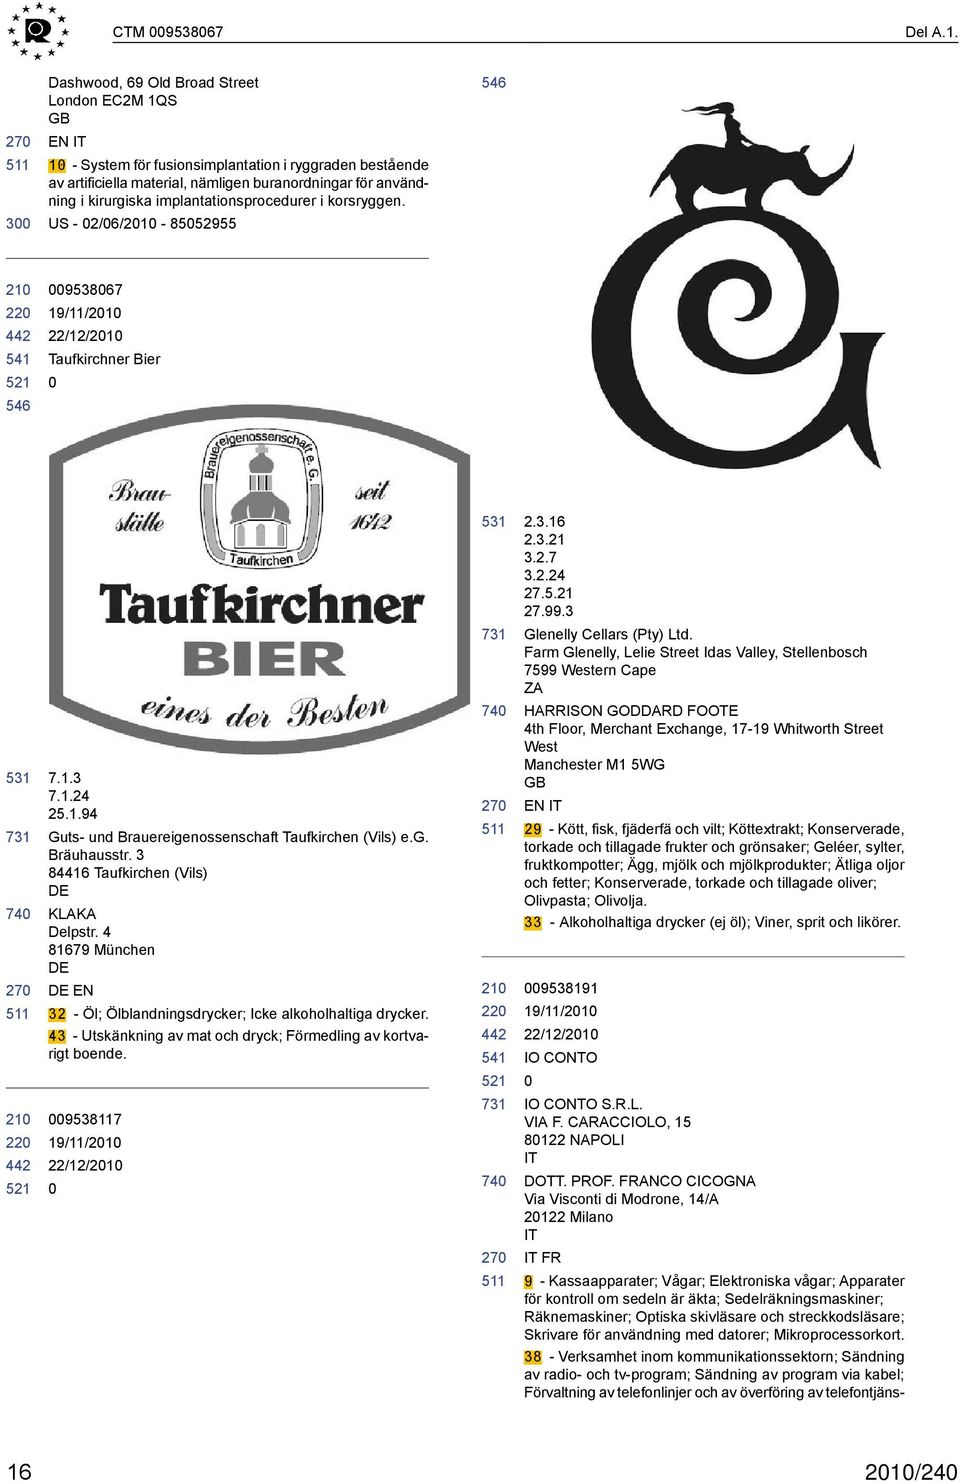 implantationsprocedurer i korsryggen. US - 2/6/21-8552955 22 546 953867 19/11/21 Taufkirchner Bier 531 22 7.1.3 7.1.24 25.1.94 Guts- und Brauereigenossenschaft Taufkirchen (Vils) e.g. Bräuhausstr.